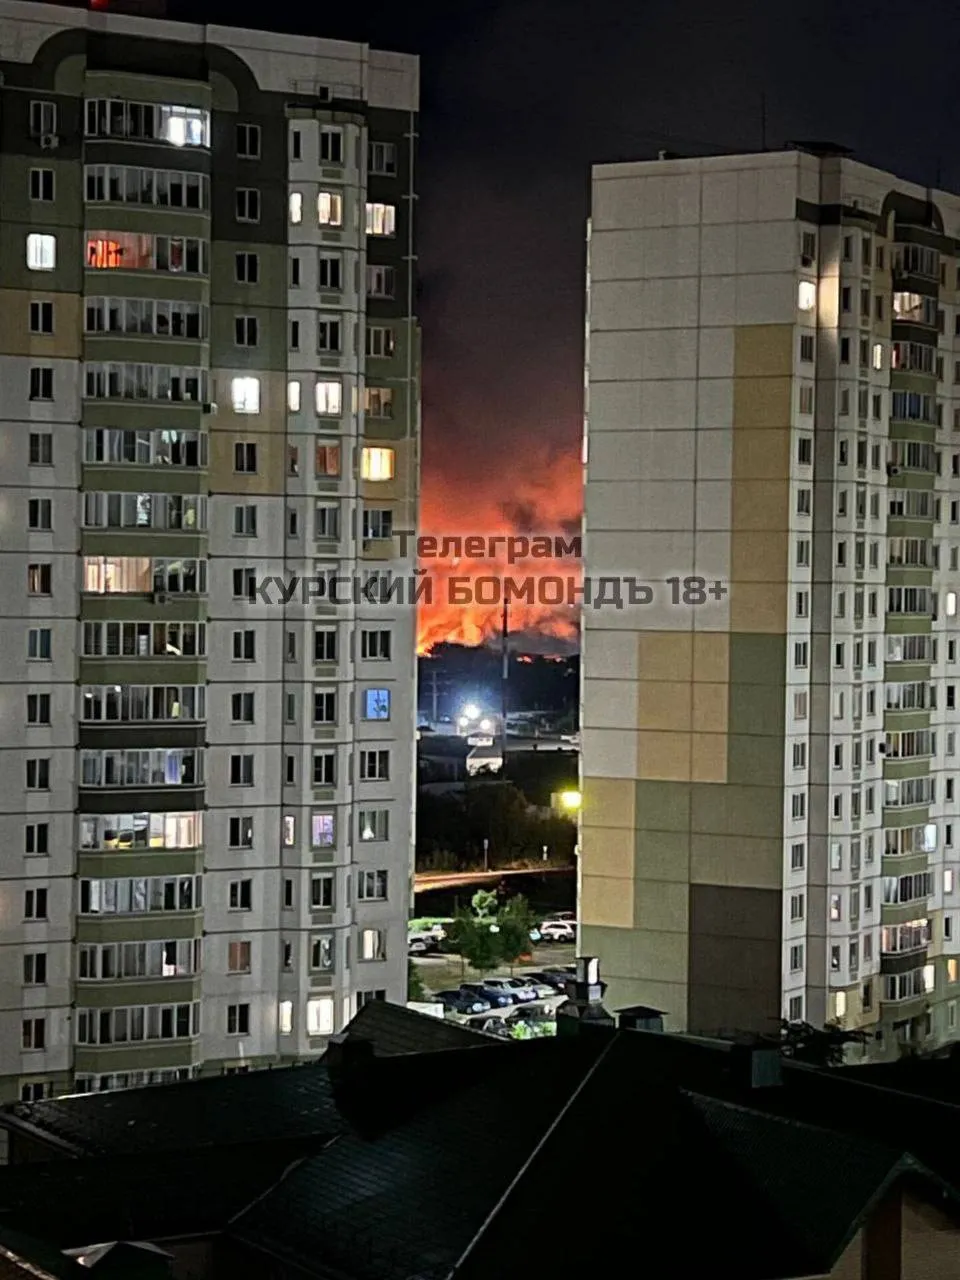 В Курську потужна пожежа в районі КЗТЗ: полум'я видно за горизонтом. Фото і відео
